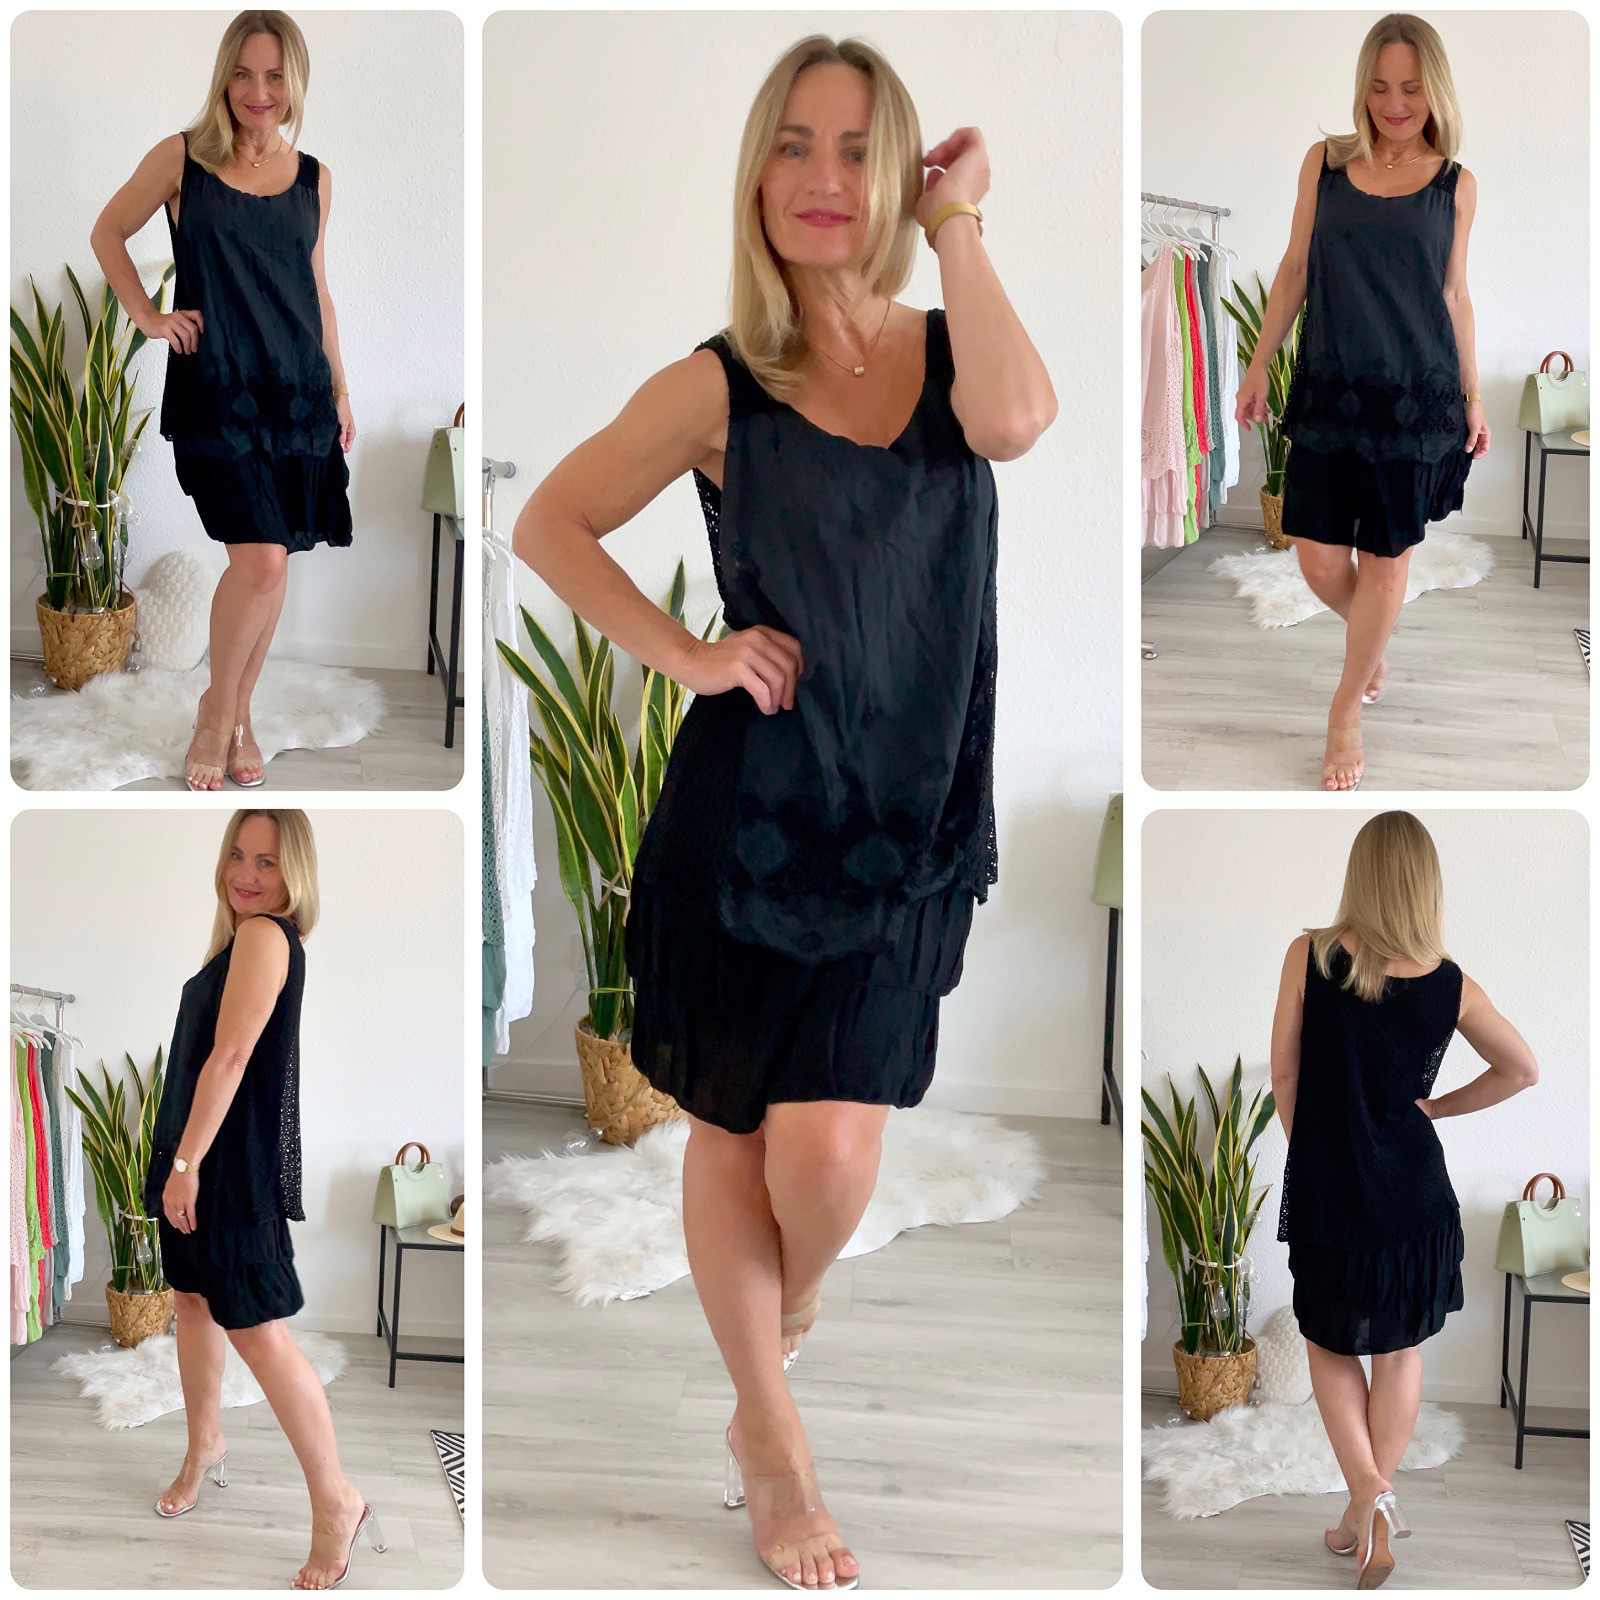 Damen Kleid schwarz Spitze Ibiza Kleid 36 bis 42